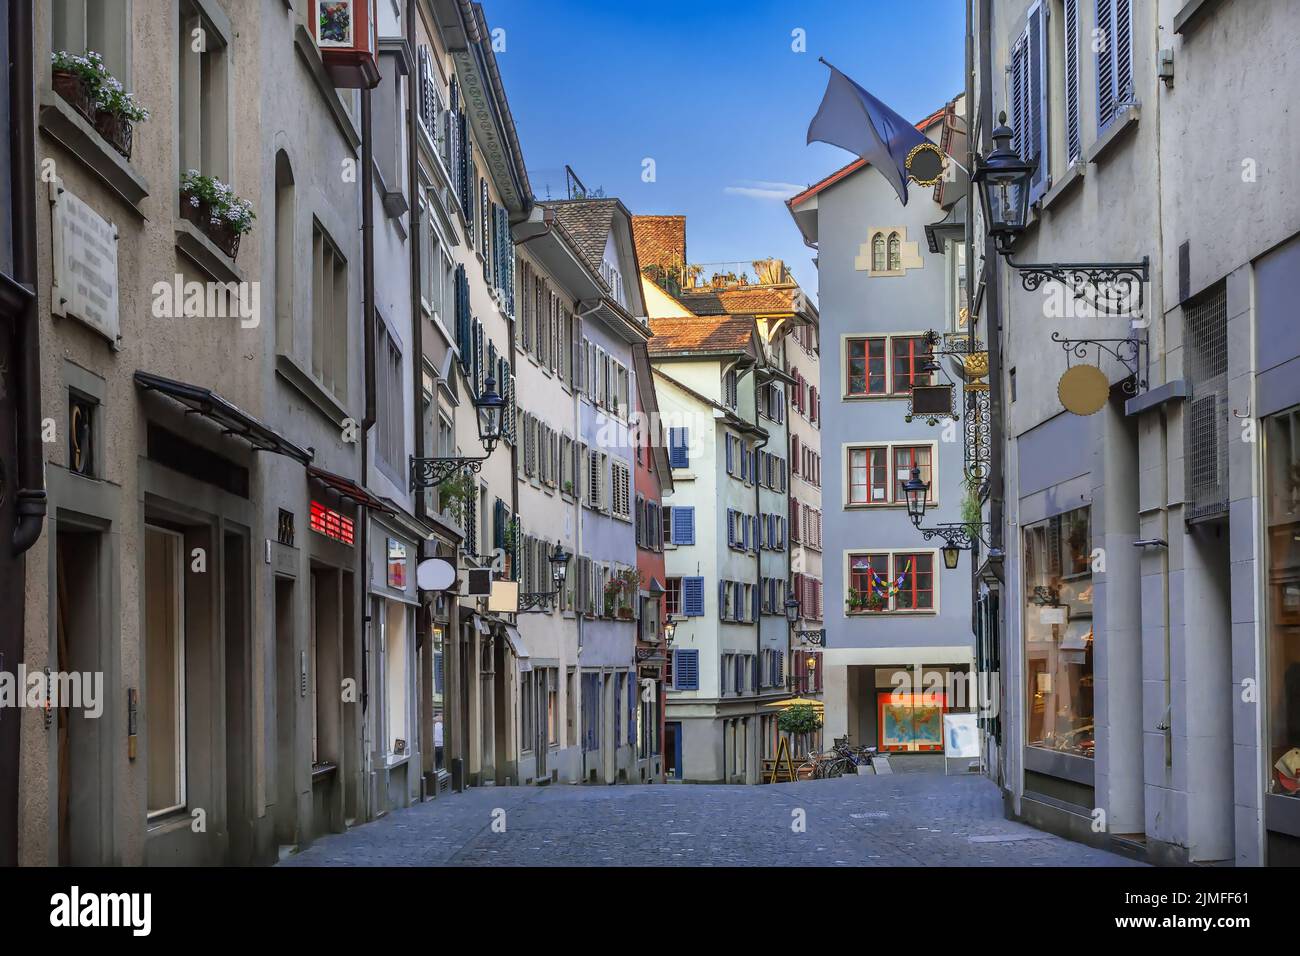 Street in Zurich city center, Switzerland Stock Photo